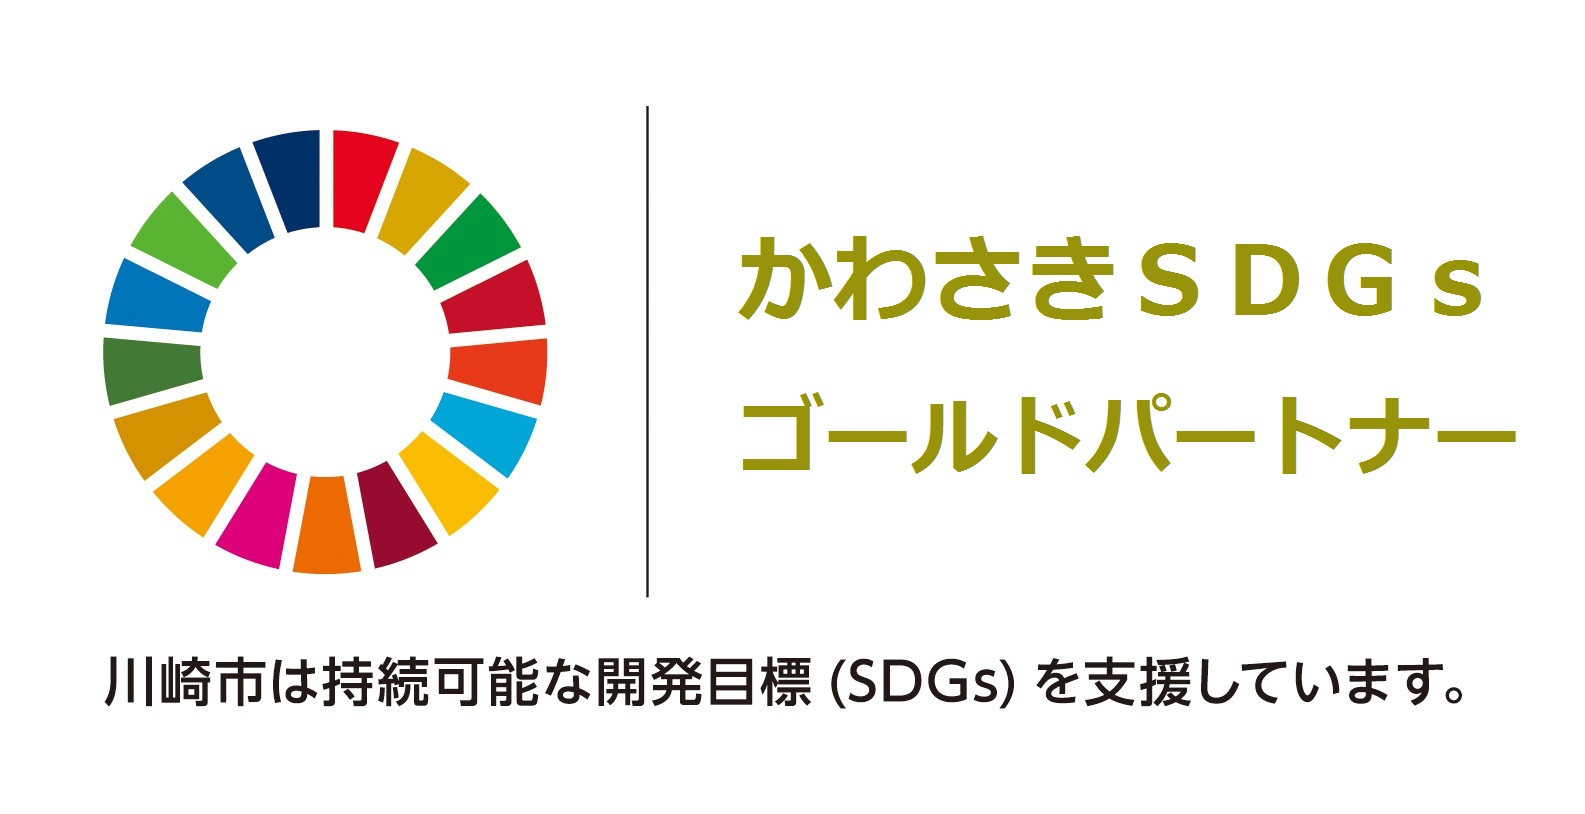 2022年、川崎市SDGsゴールドパートナーに認証されました。